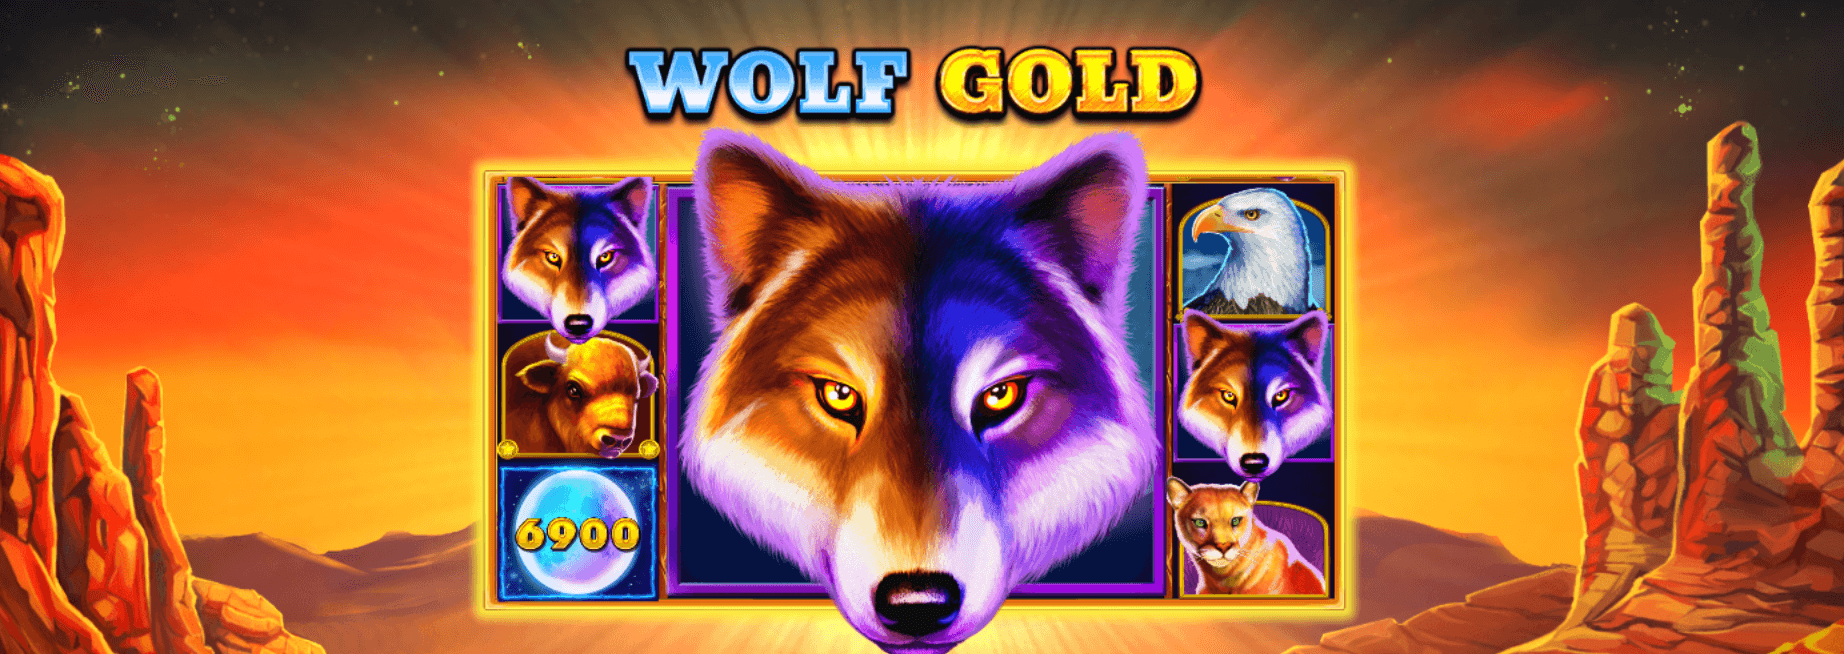 reseña de la slot Wolf Gold en español